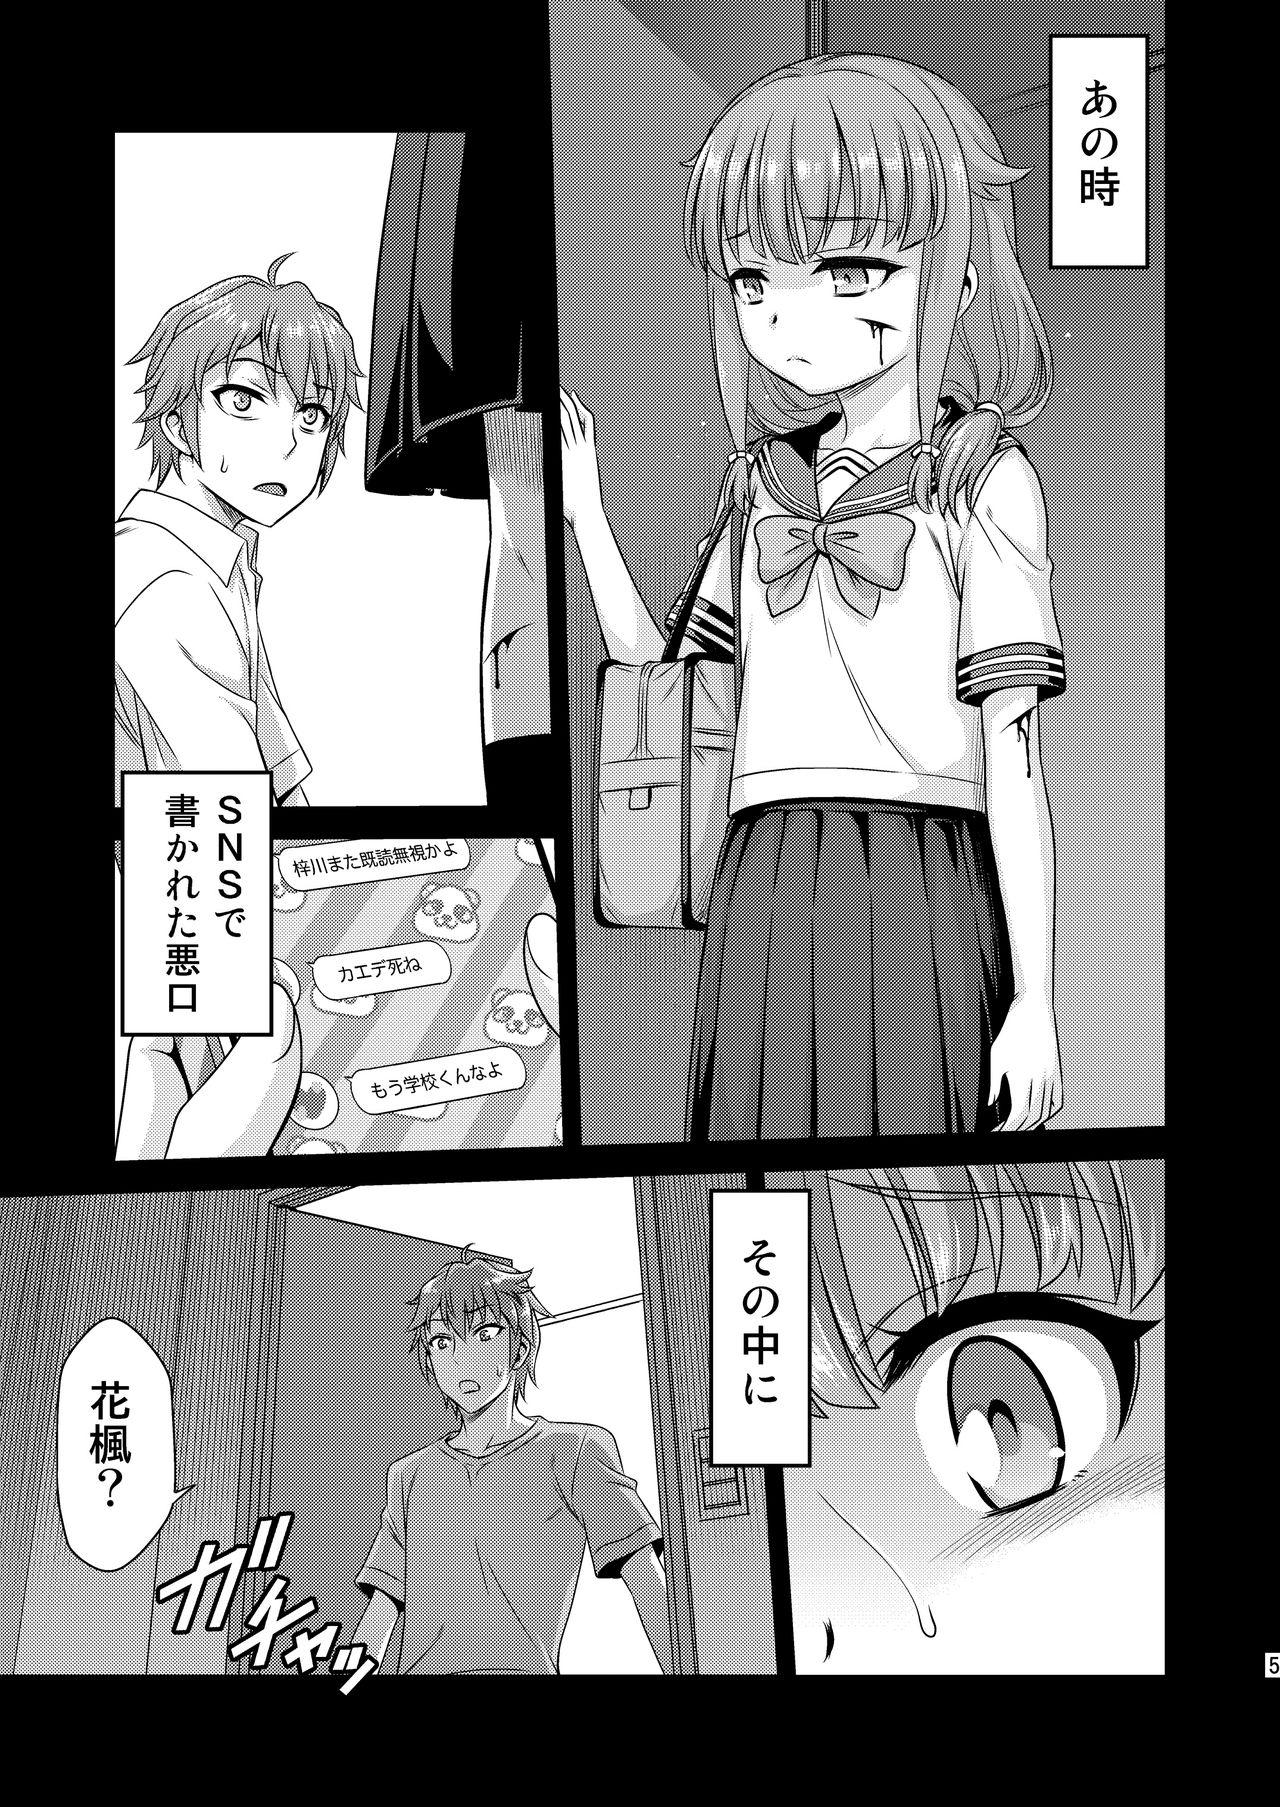 Hottie Kaede Shoukougun!! - Seishun buta yarou wa bunny girl senpai no yume o minai Glory Hole - Page 5